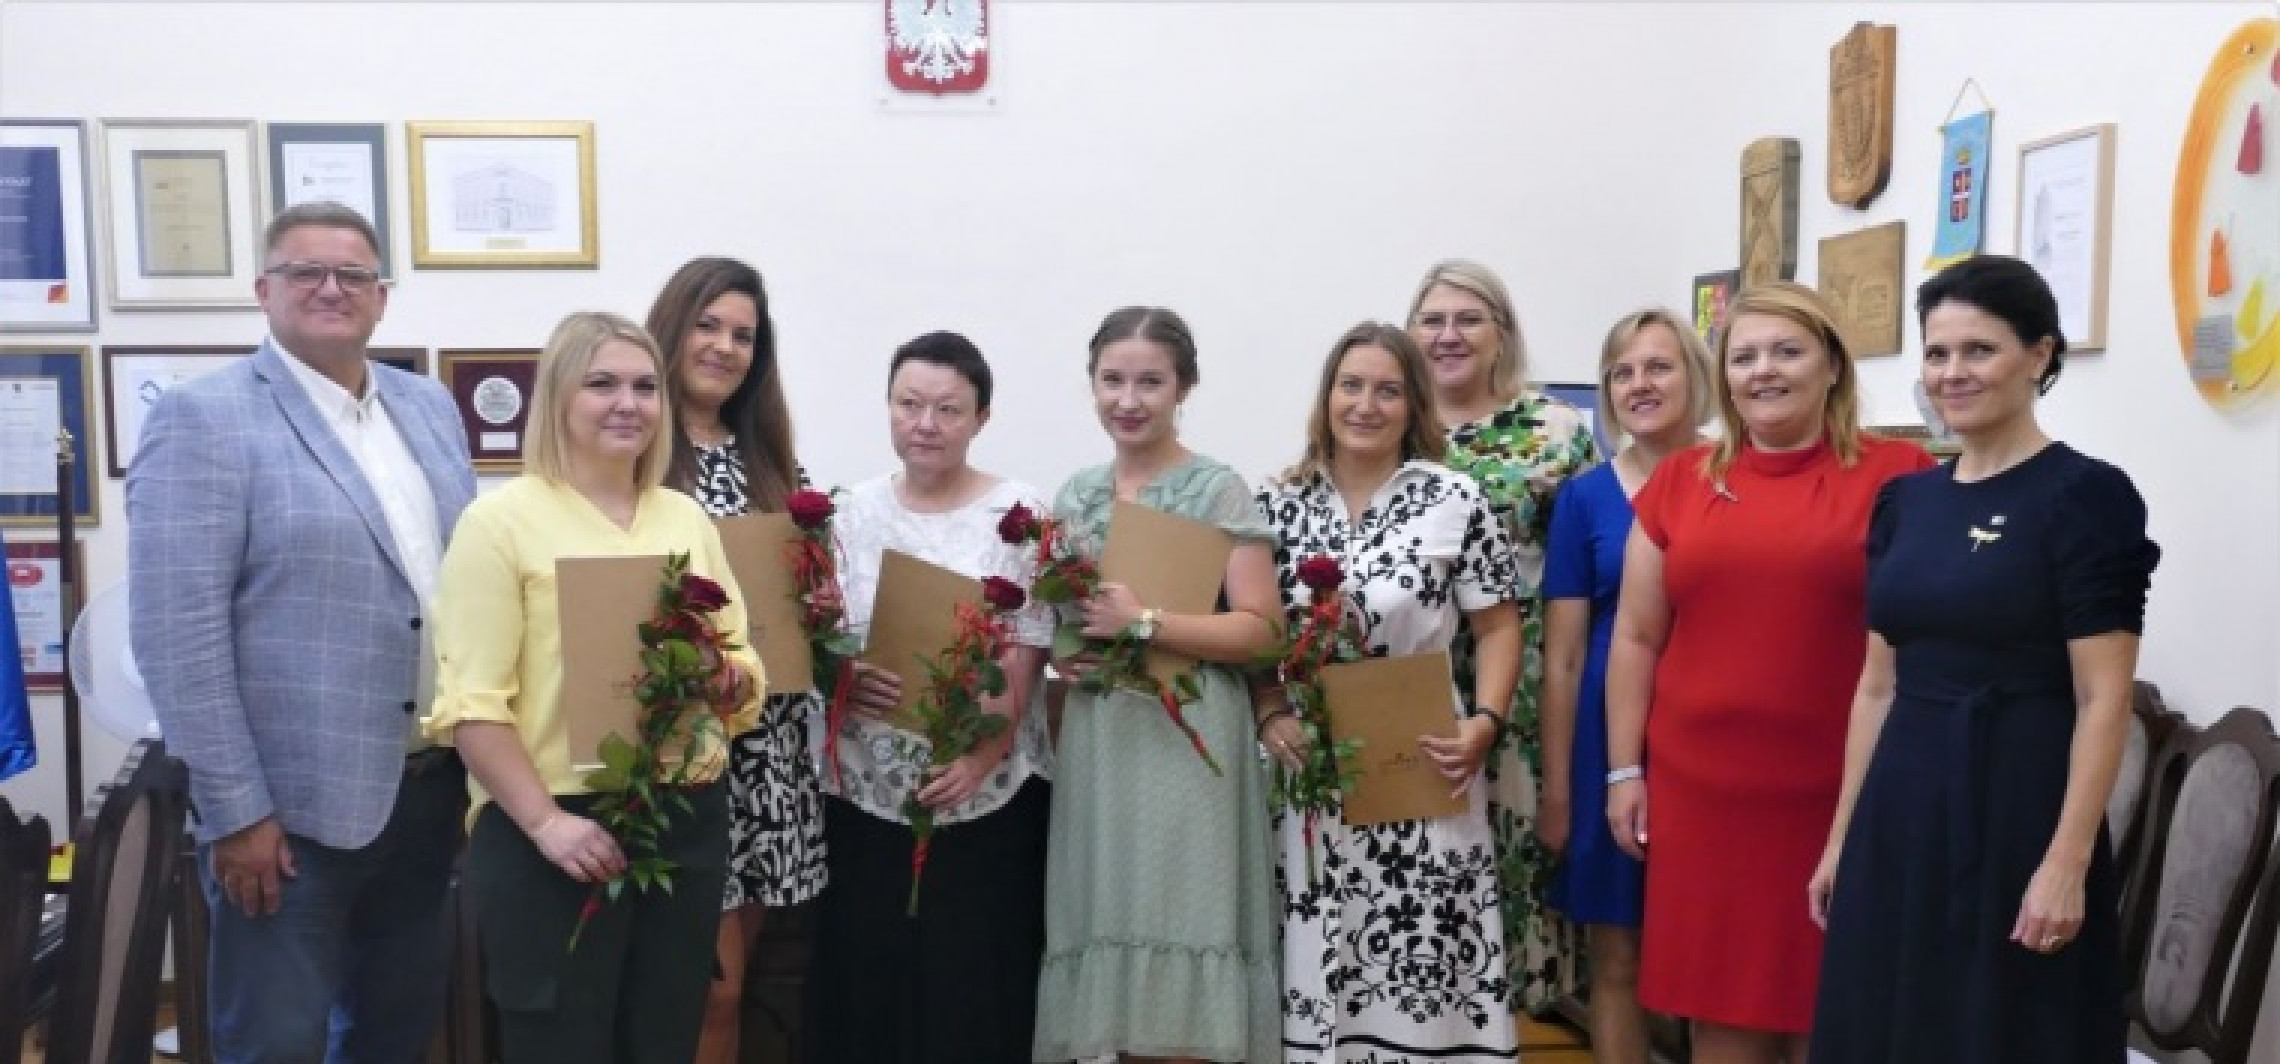 Inowrocław - Nauczyciele mianowani złożyli ślubowanie